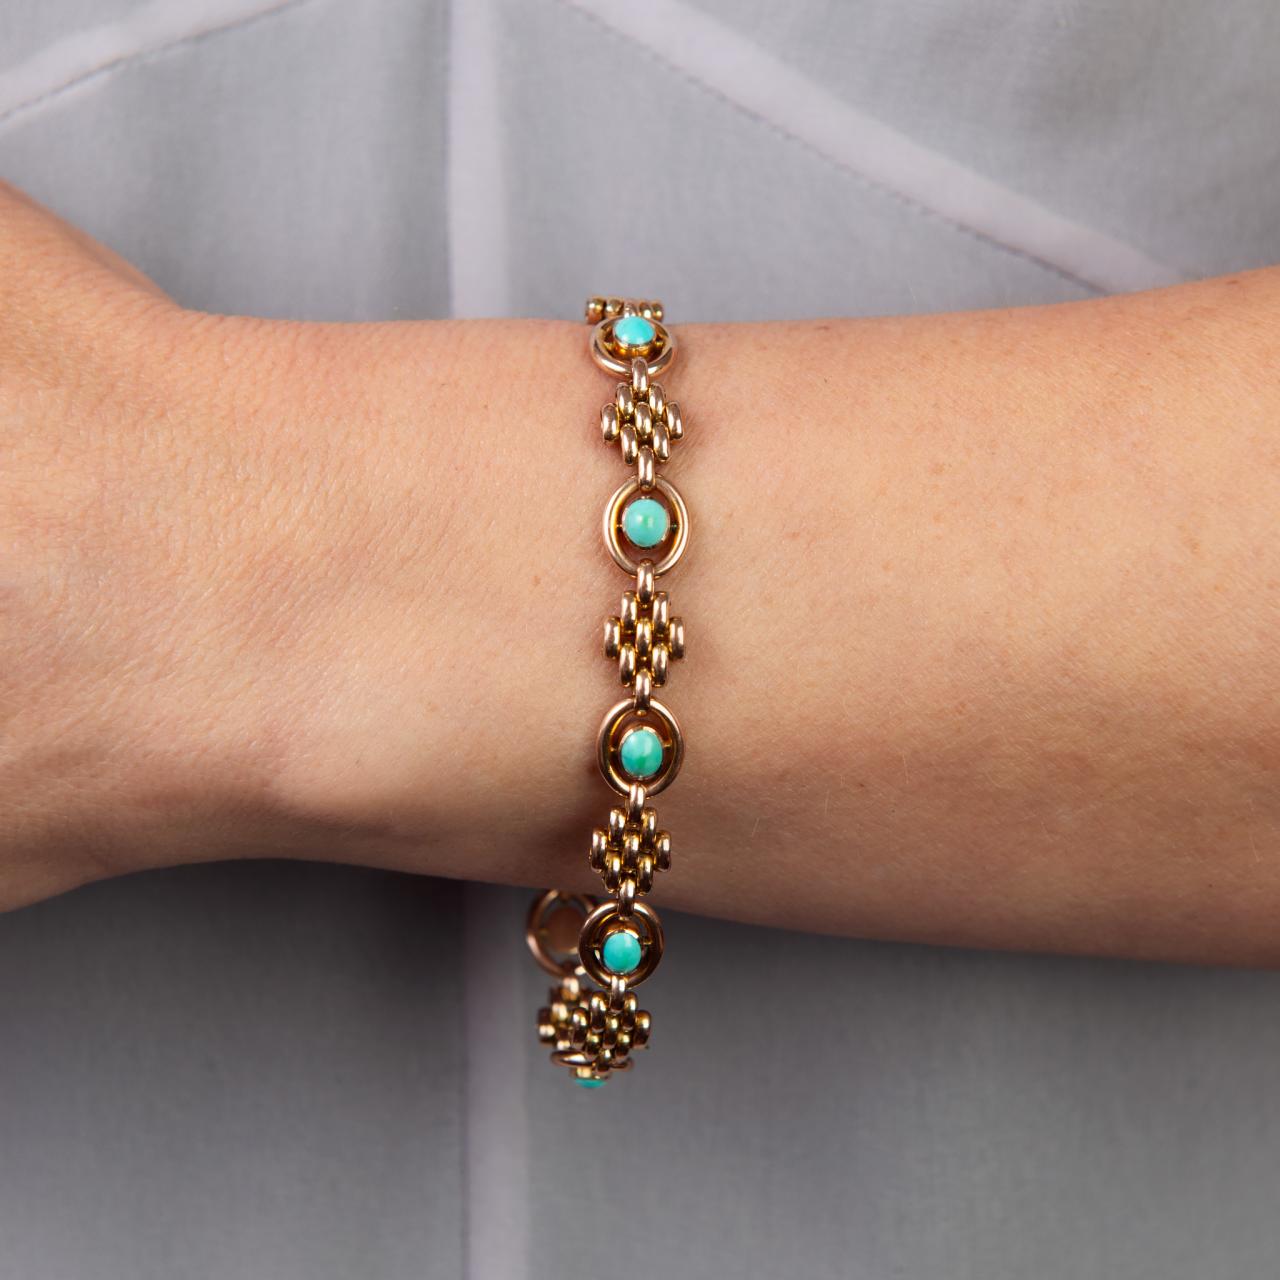 Antique turquoise and gatelink bracelet